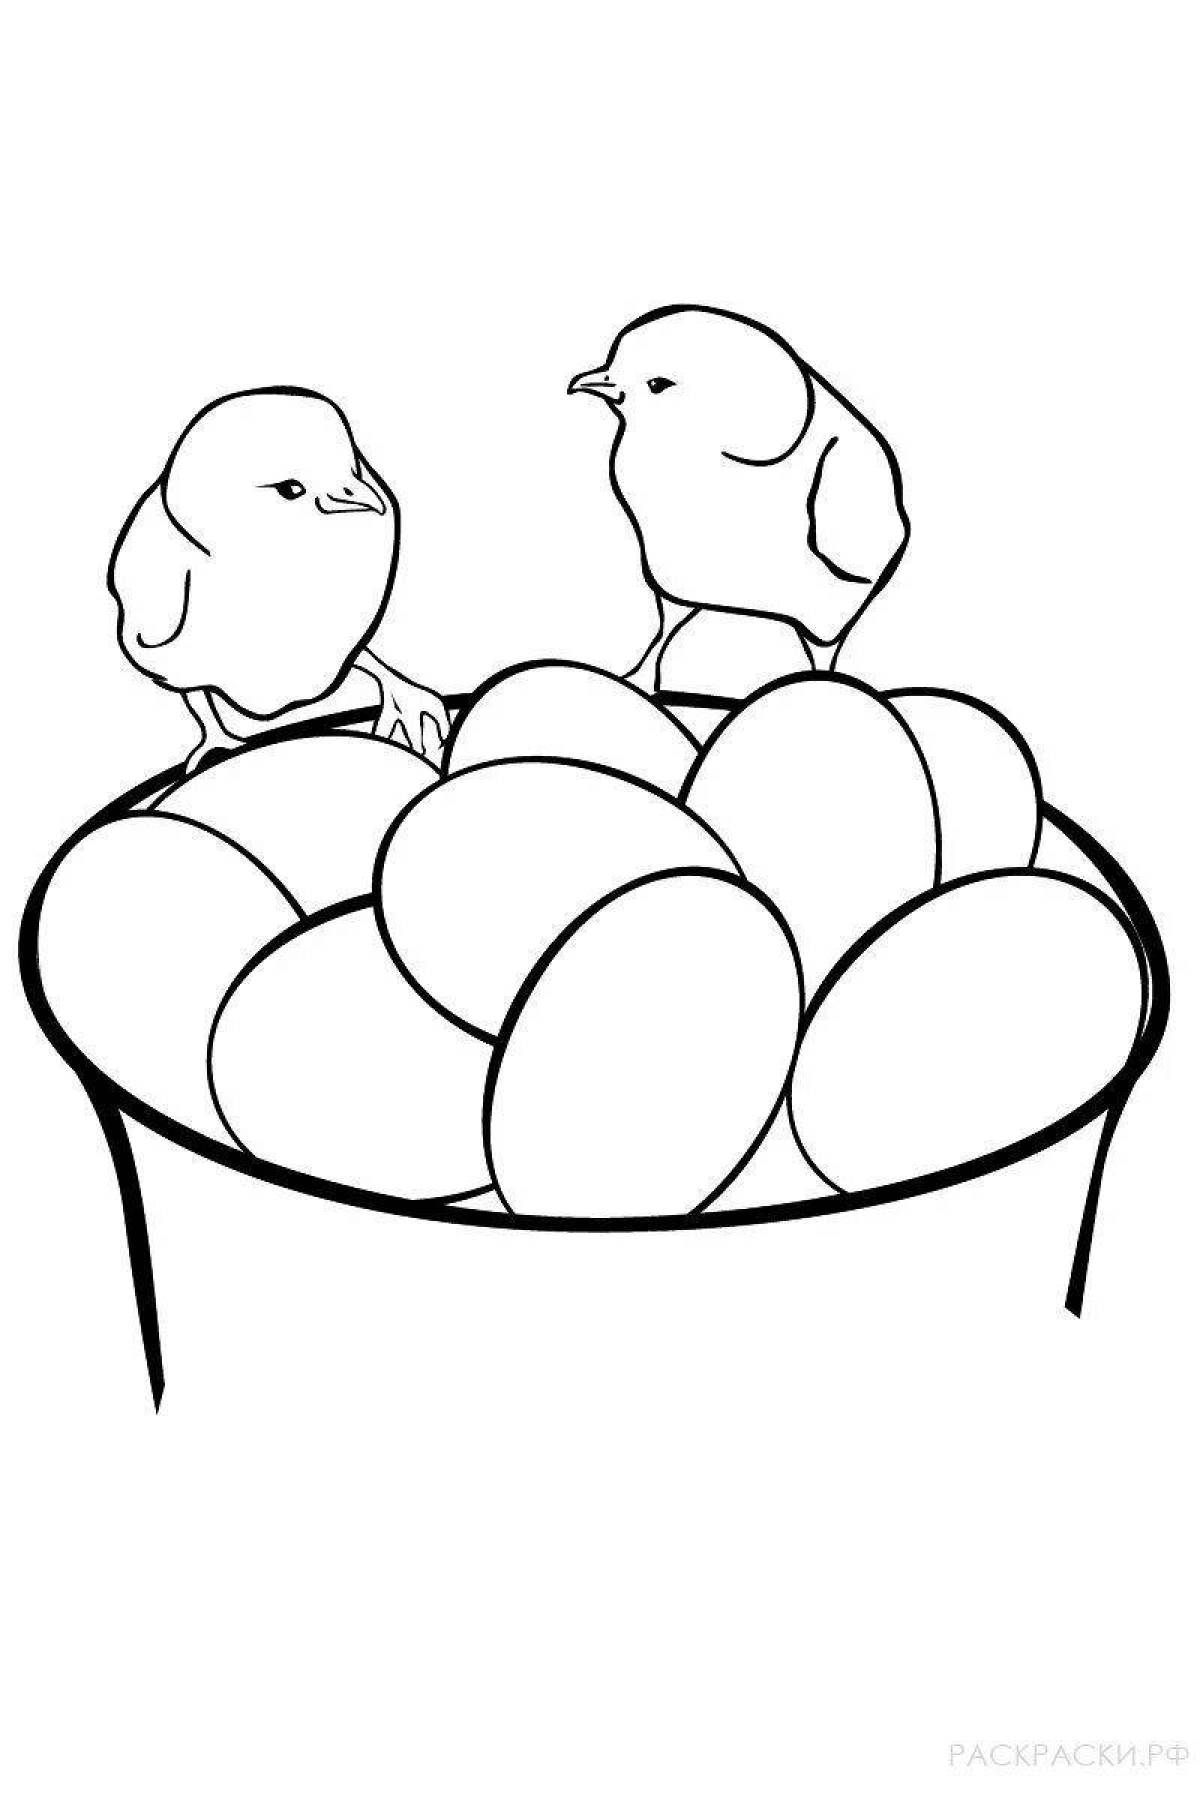 Игривая страница раскраски куриных яиц